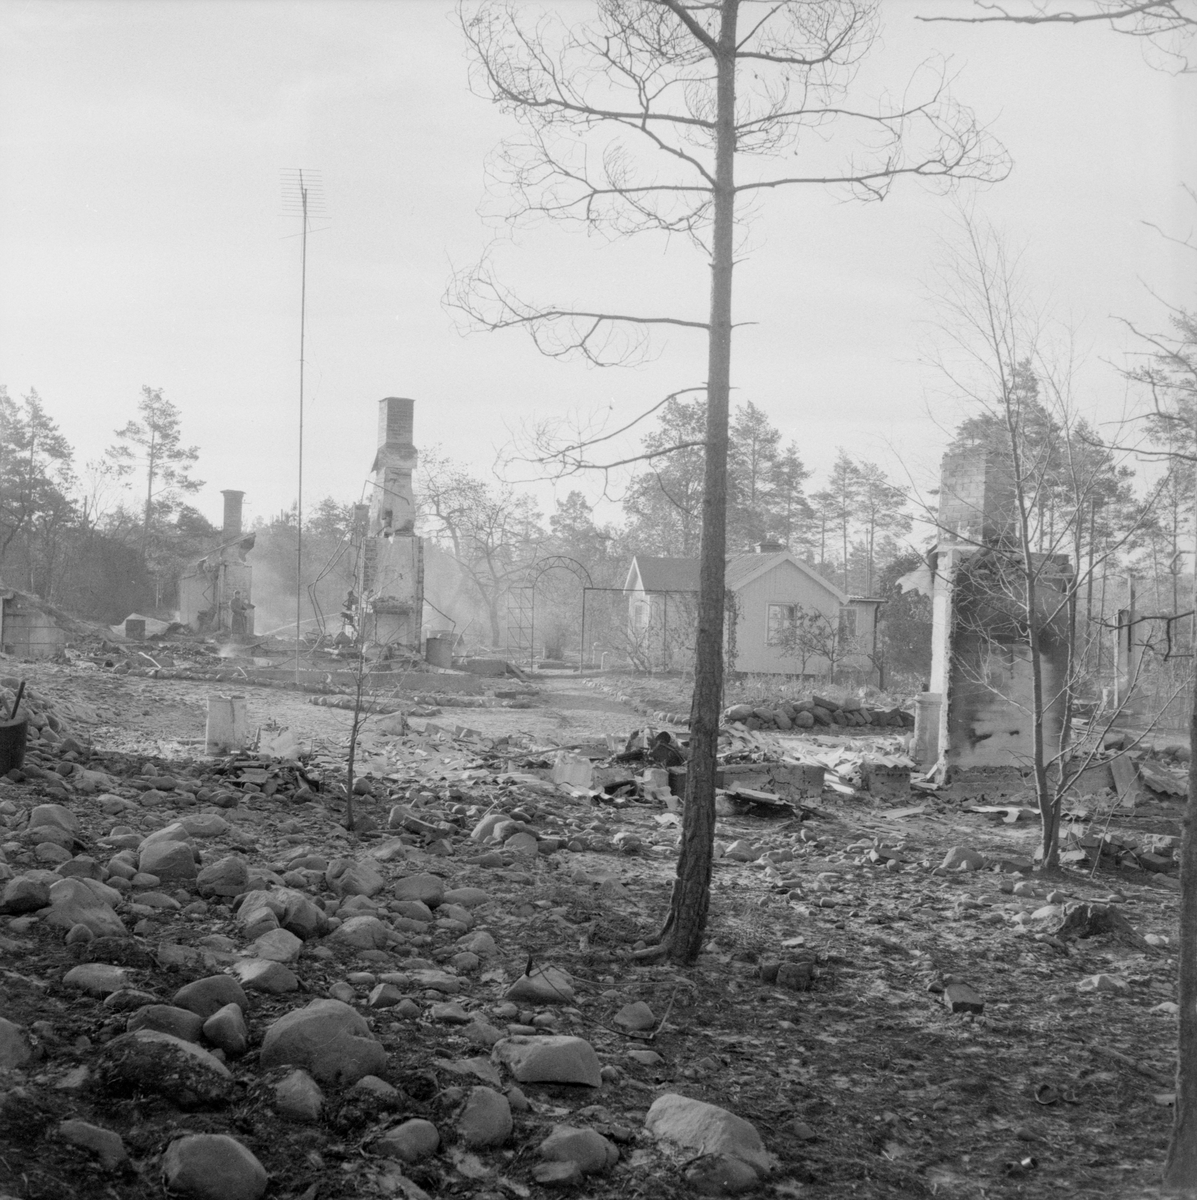 Dagen efter den stora branden i Västervik 1959. Det var vid 14-tiden den 27 augusti som branden startat vid en soptipp väster om Västervik. Inom kort gick branden på en halv mils bredd i frånlandsvind och en katastrof hotade kuststaden med havet som spärr i öster. Förutom Västerviks yrkesbrandkår, borgarbrandkår och olika industribrandkårer deltog i släckningsarbetet brandavdelningar från Norrköping, Linköping, Överum, Gamleby, Hjorted, Hallingeberg och Gladhammar. Från Linköpingsgarnisonen rekvirerades också militär hjälp med 375 man. Från F3 dirigerades även ett flygplan till Västervik med radiobil för att leda släckningsarbetet. Ett väldigt rökmoln fick solen att lysa mattröd över staden och en spökstämning spreds på gatorna. Man förberedde att flera hundra familjer skulle få lämna sina hem vid den omedelbara eldfronten. Med en heroiskt och samfälld insats hejdades dock eldens framfart efterhand och stadens invånare kunde andas ut.